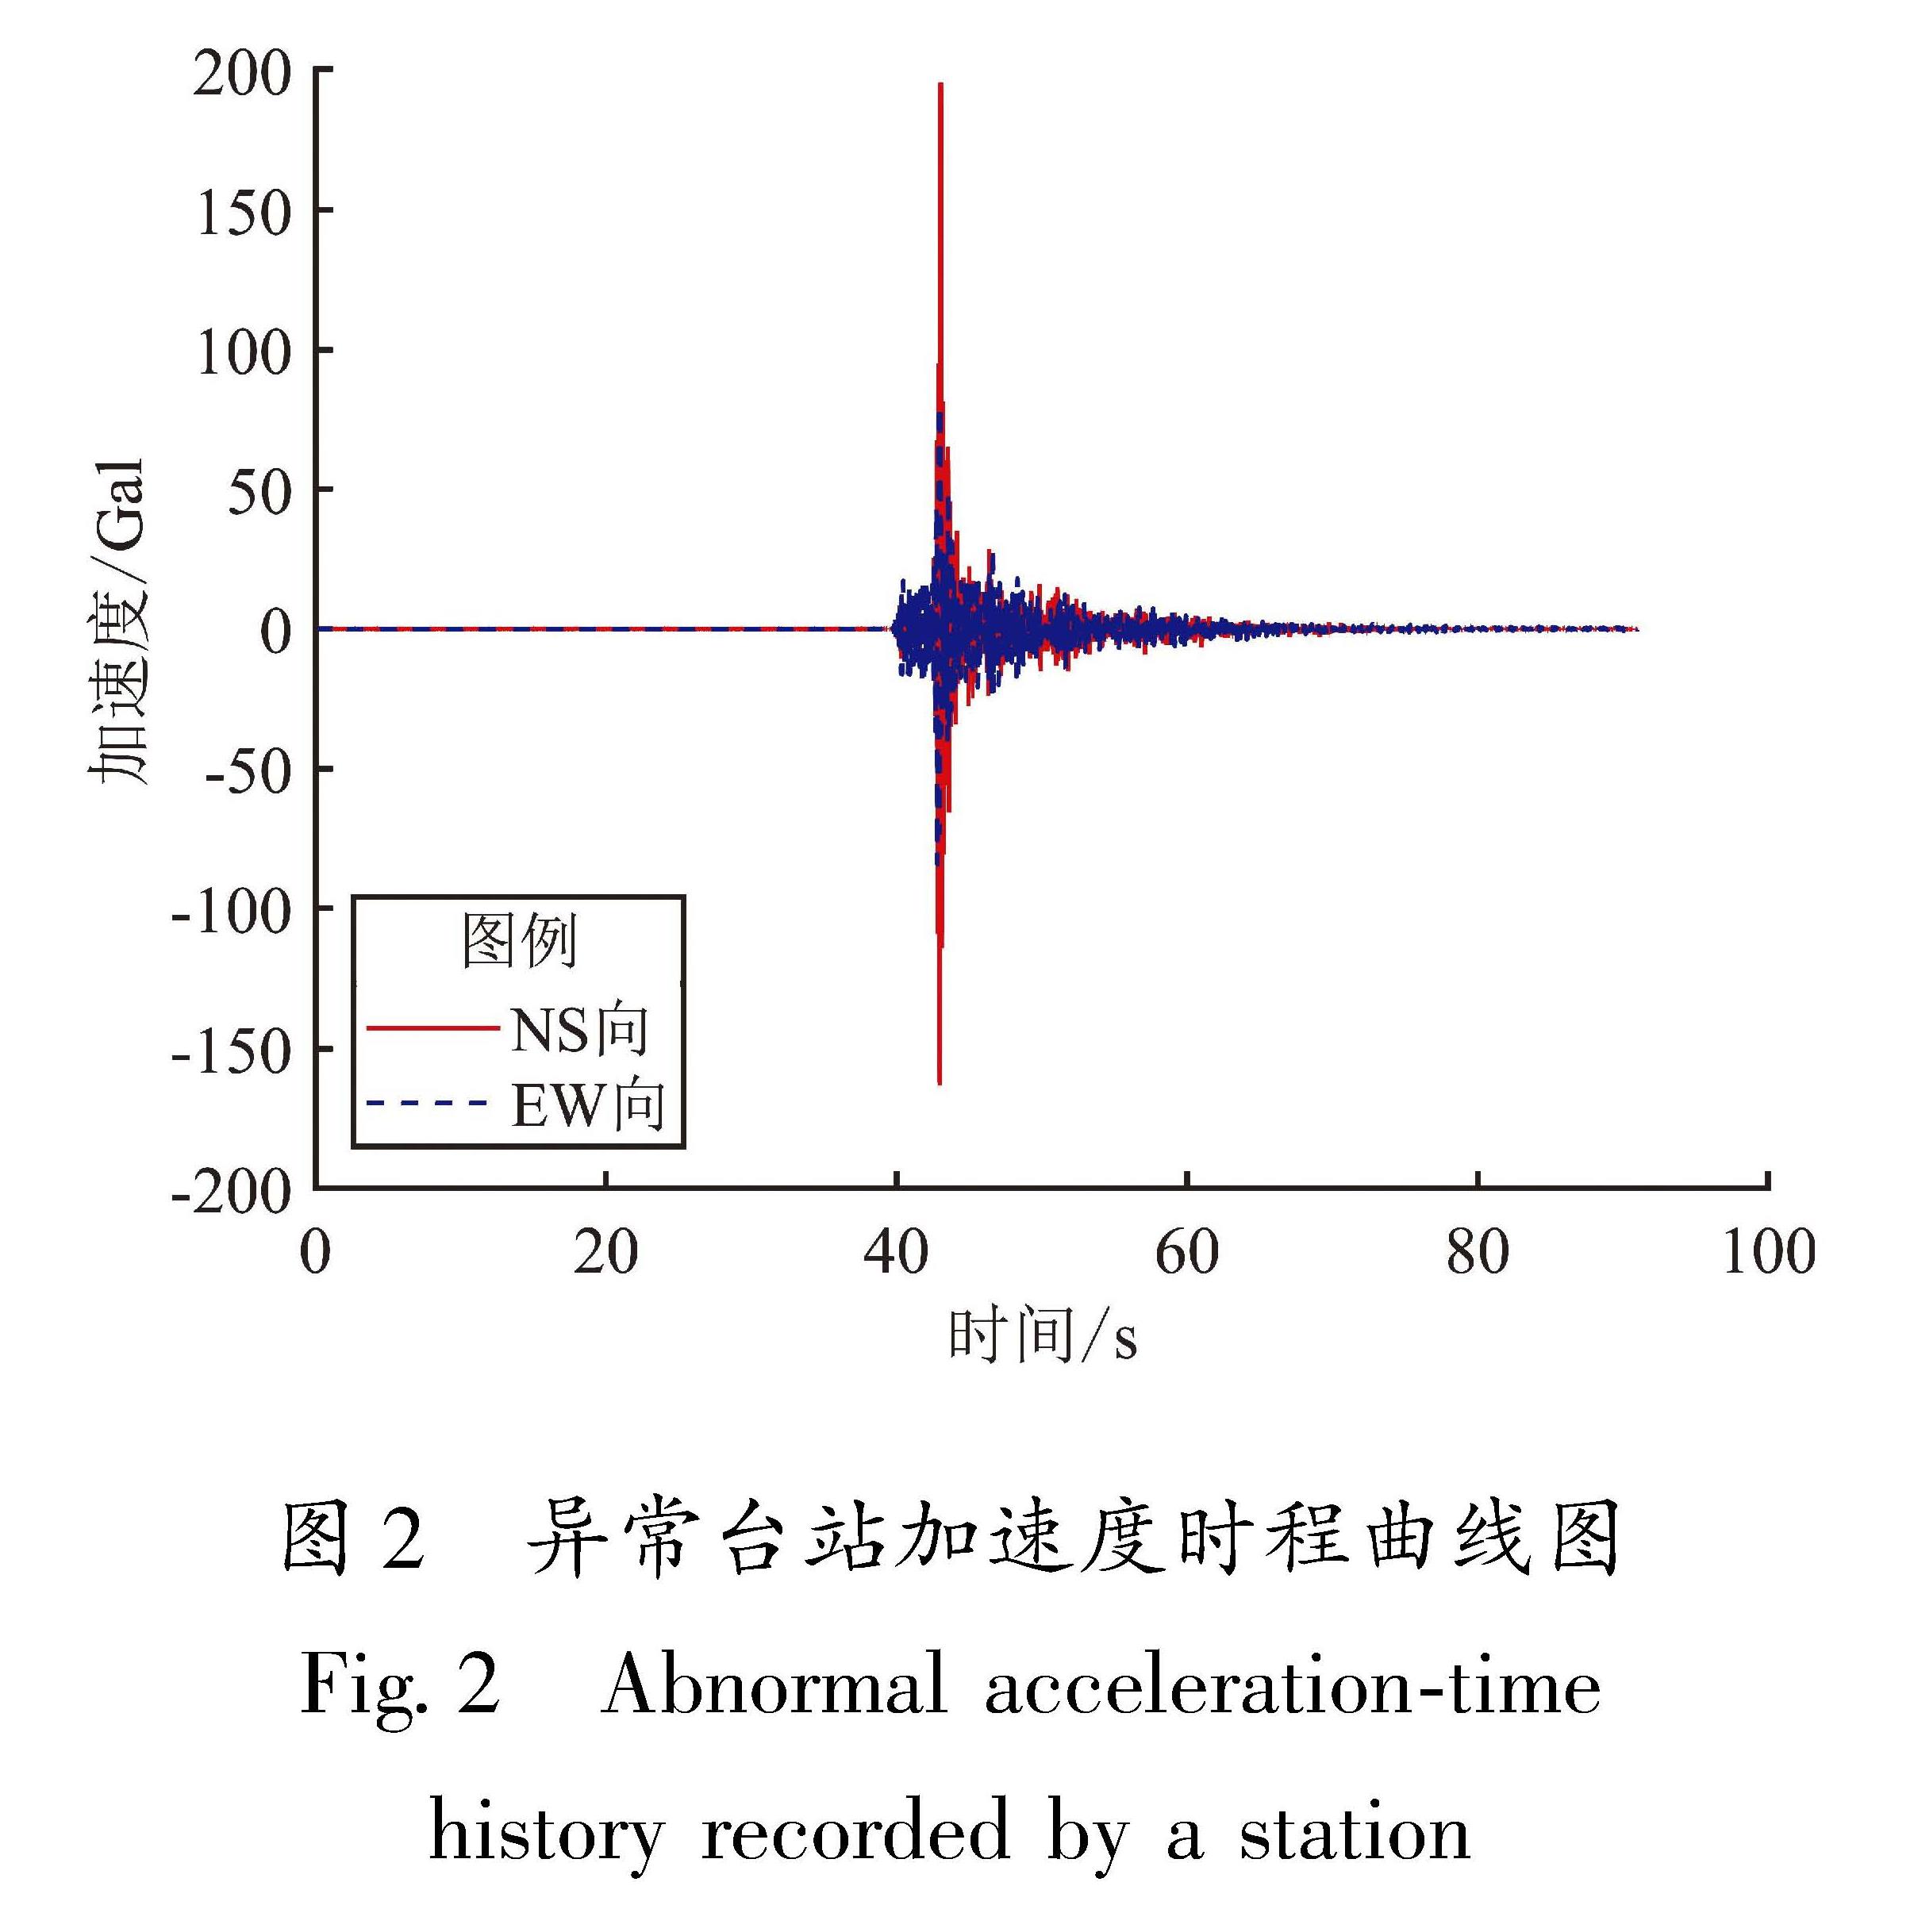 图2 异常台站加速度时程曲线图<br/>Fig.2 Abnormal acceleration-time history recorded by a station